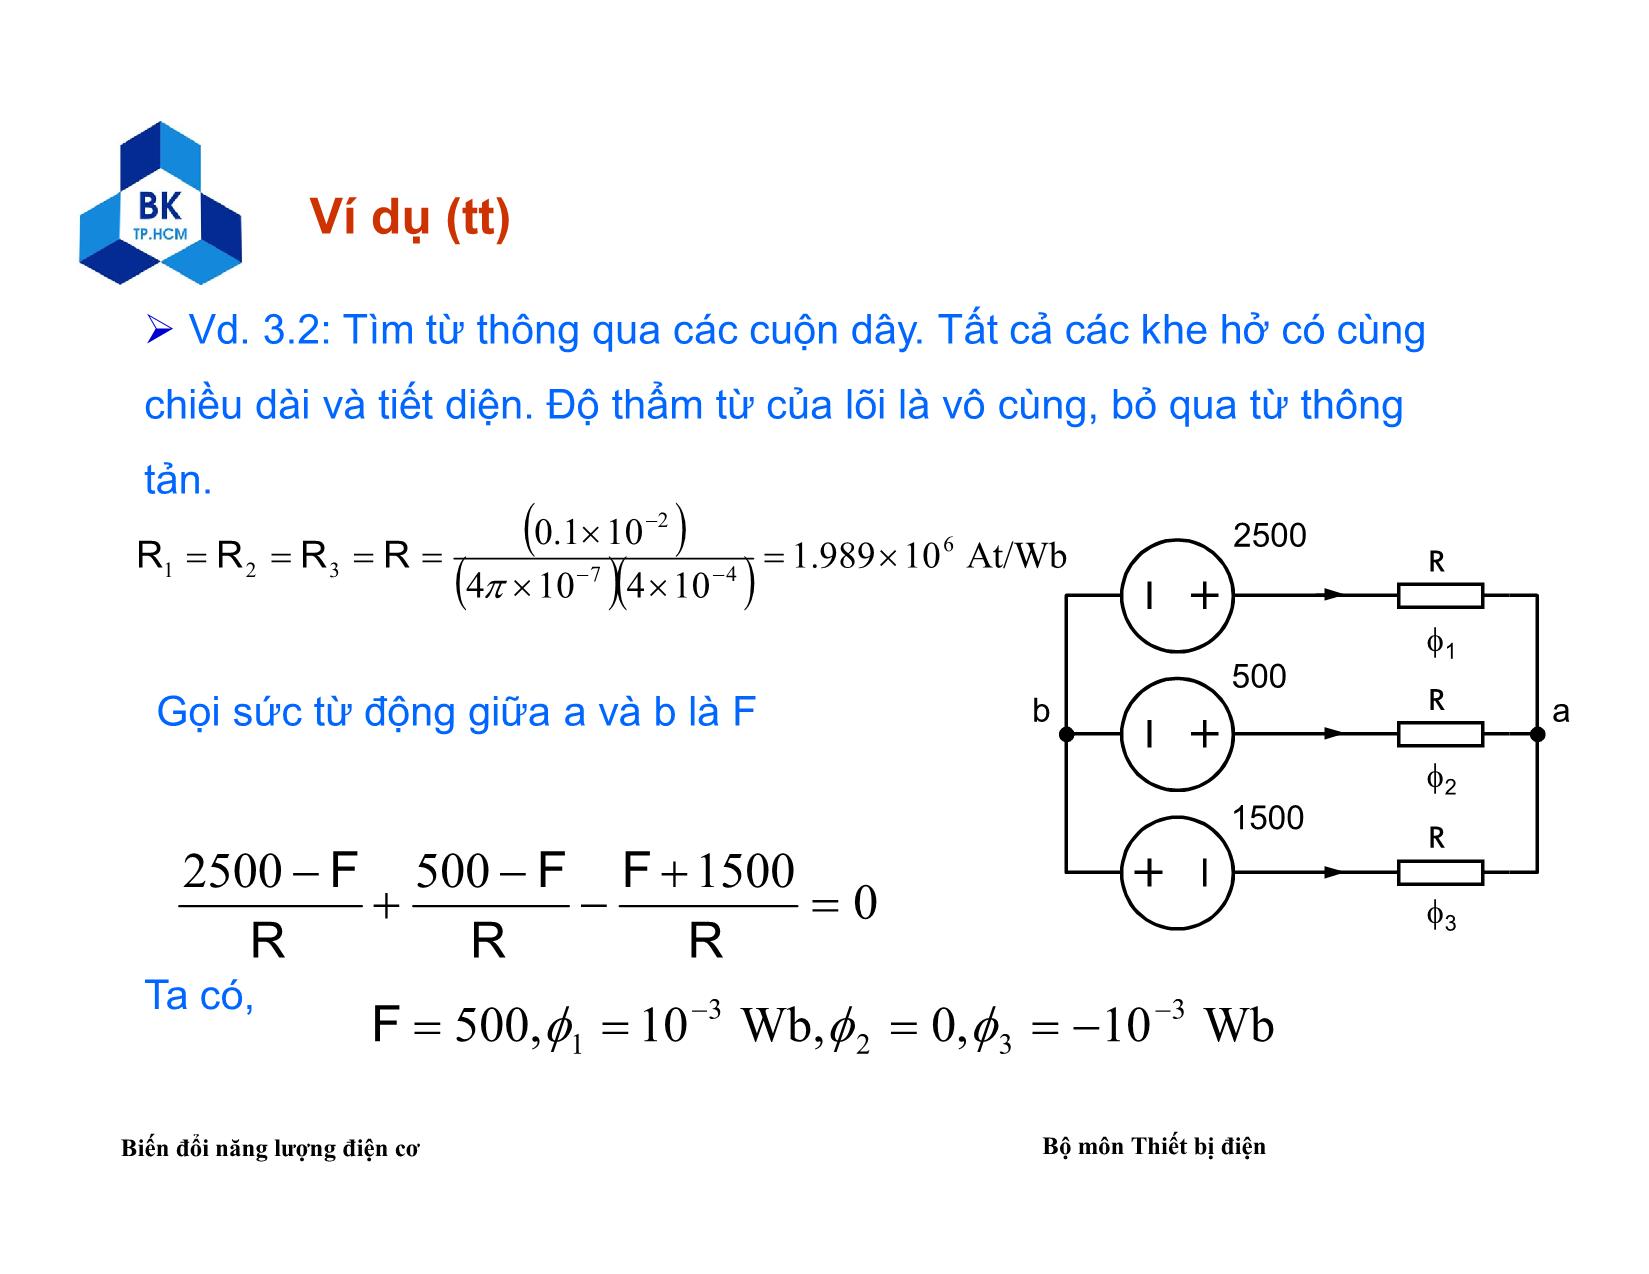 Bài giảng Biến đổi năng lượng điện cơ - Chương 2: Vectơ pha và mạch công suất 3 pha trang 8